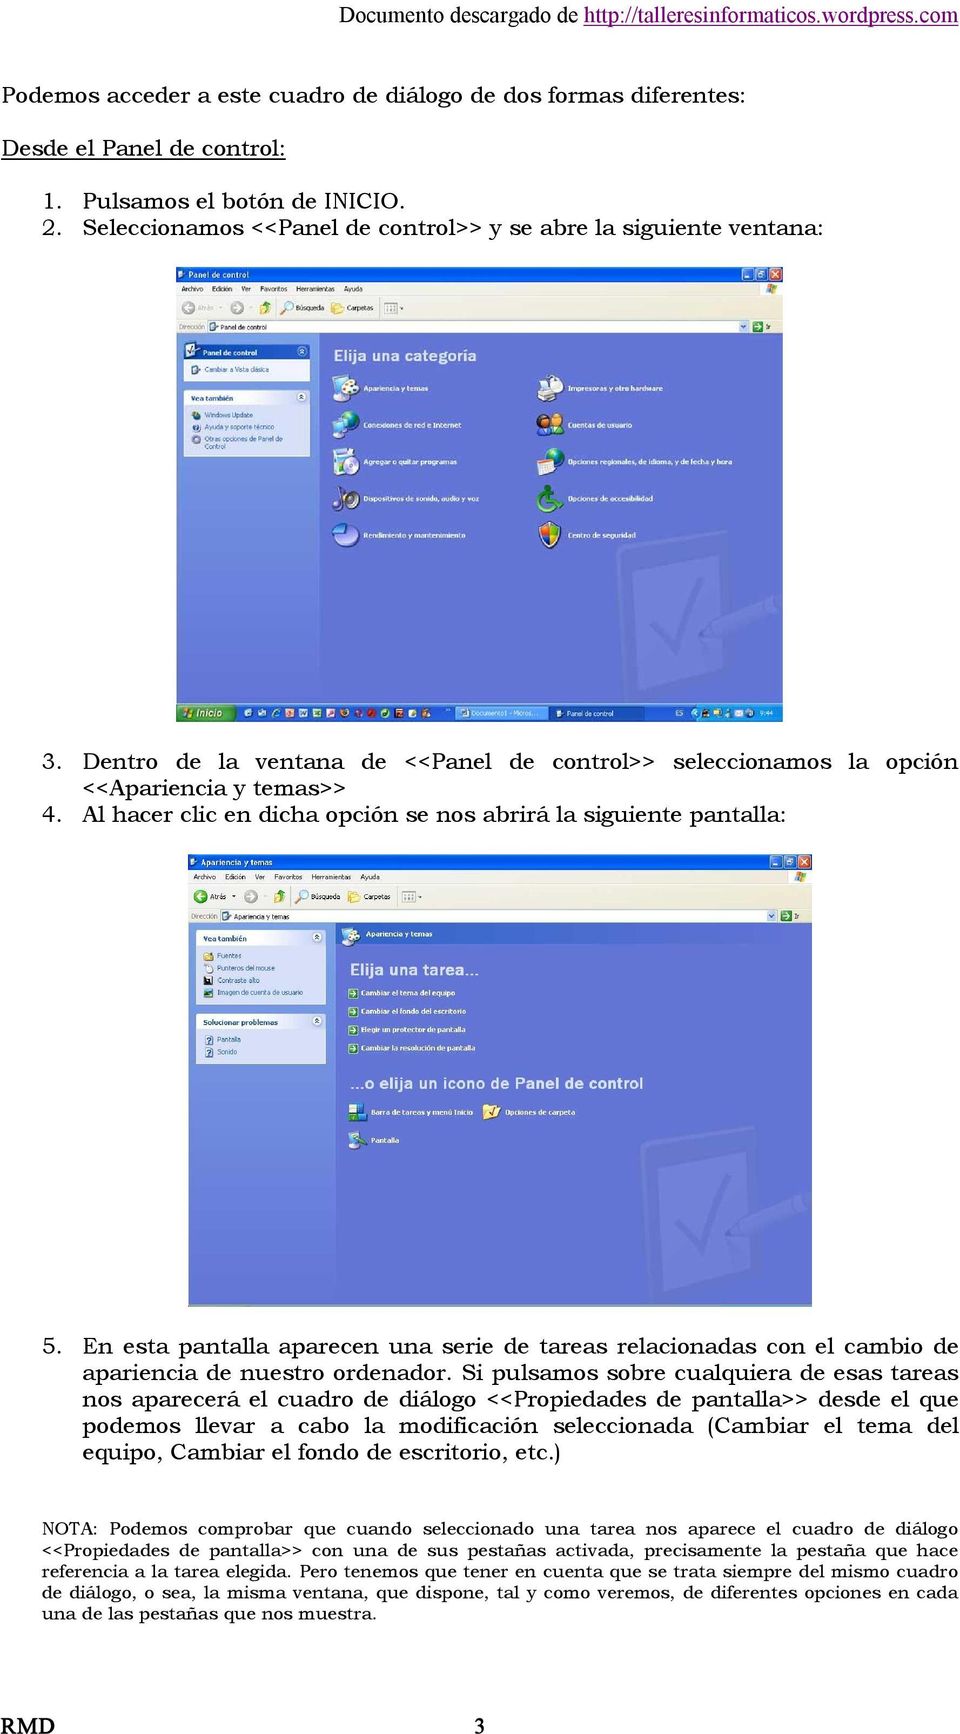 En esta pantalla aparecen una serie de tareas relacionadas con el cambio de apariencia de nuestro ordenador.